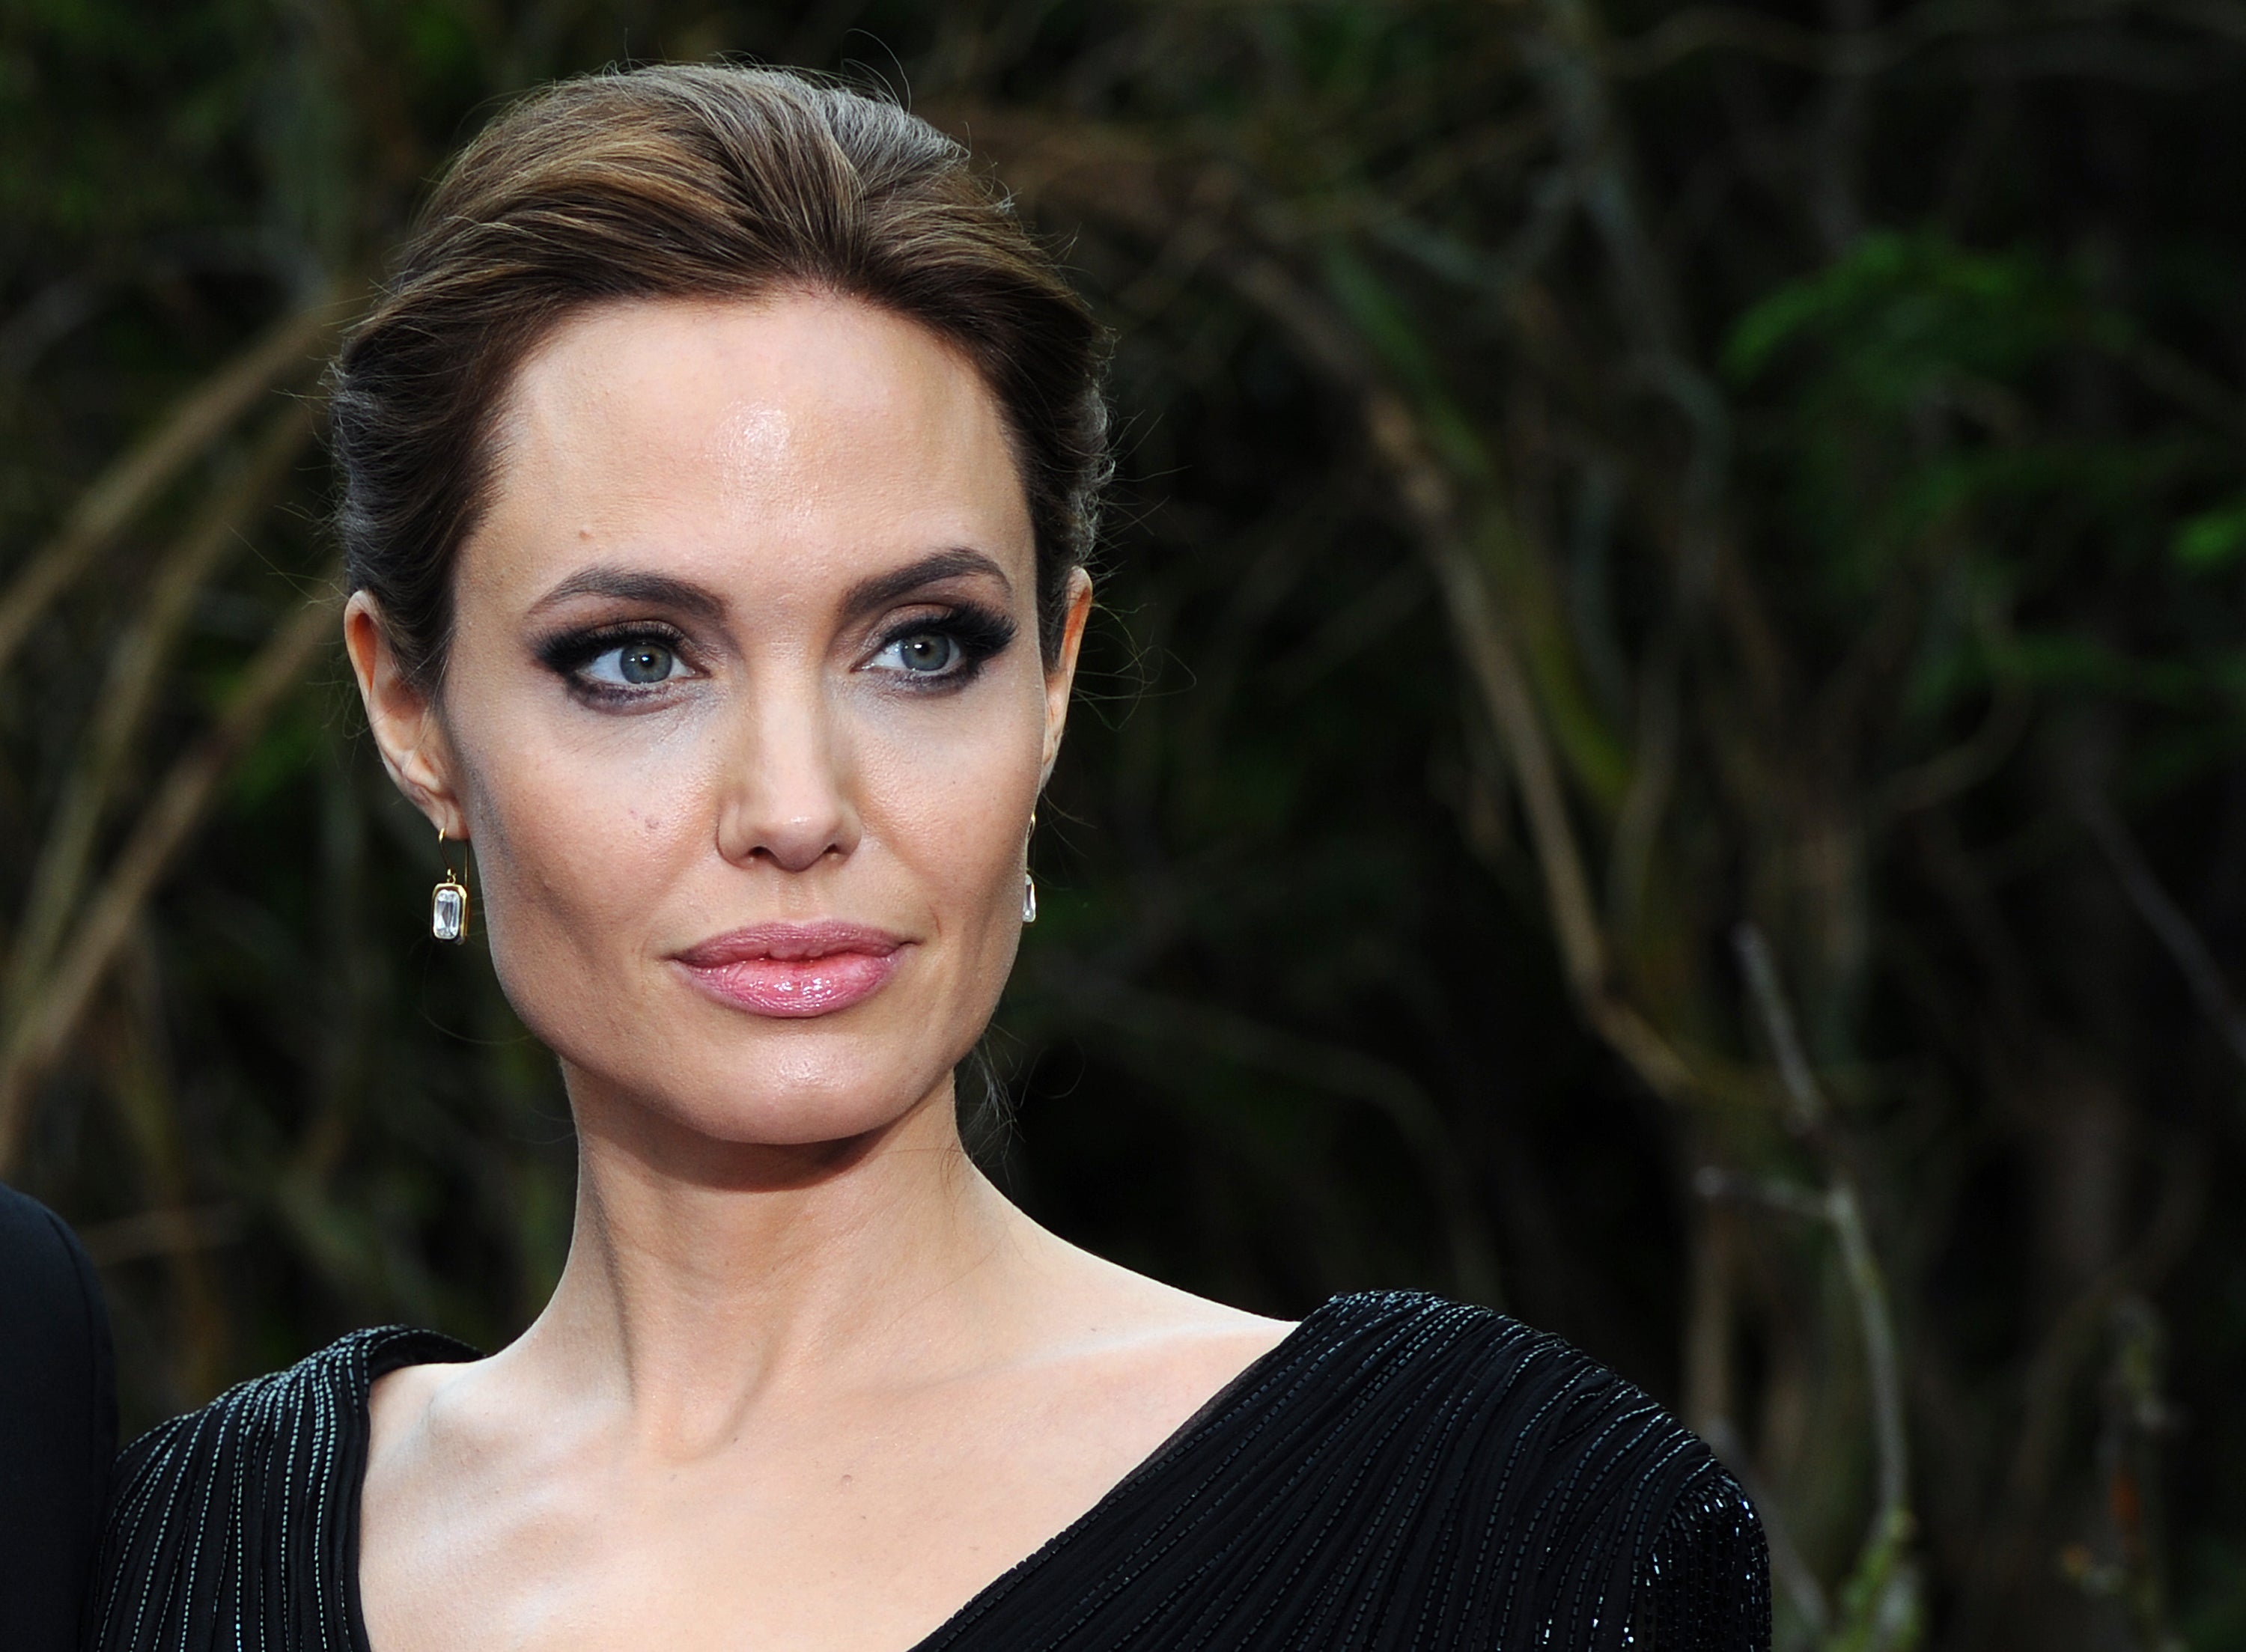 Tabar editó las imágenes para parecerse a Angelina Jolie y aclara que lo hizo por diversión